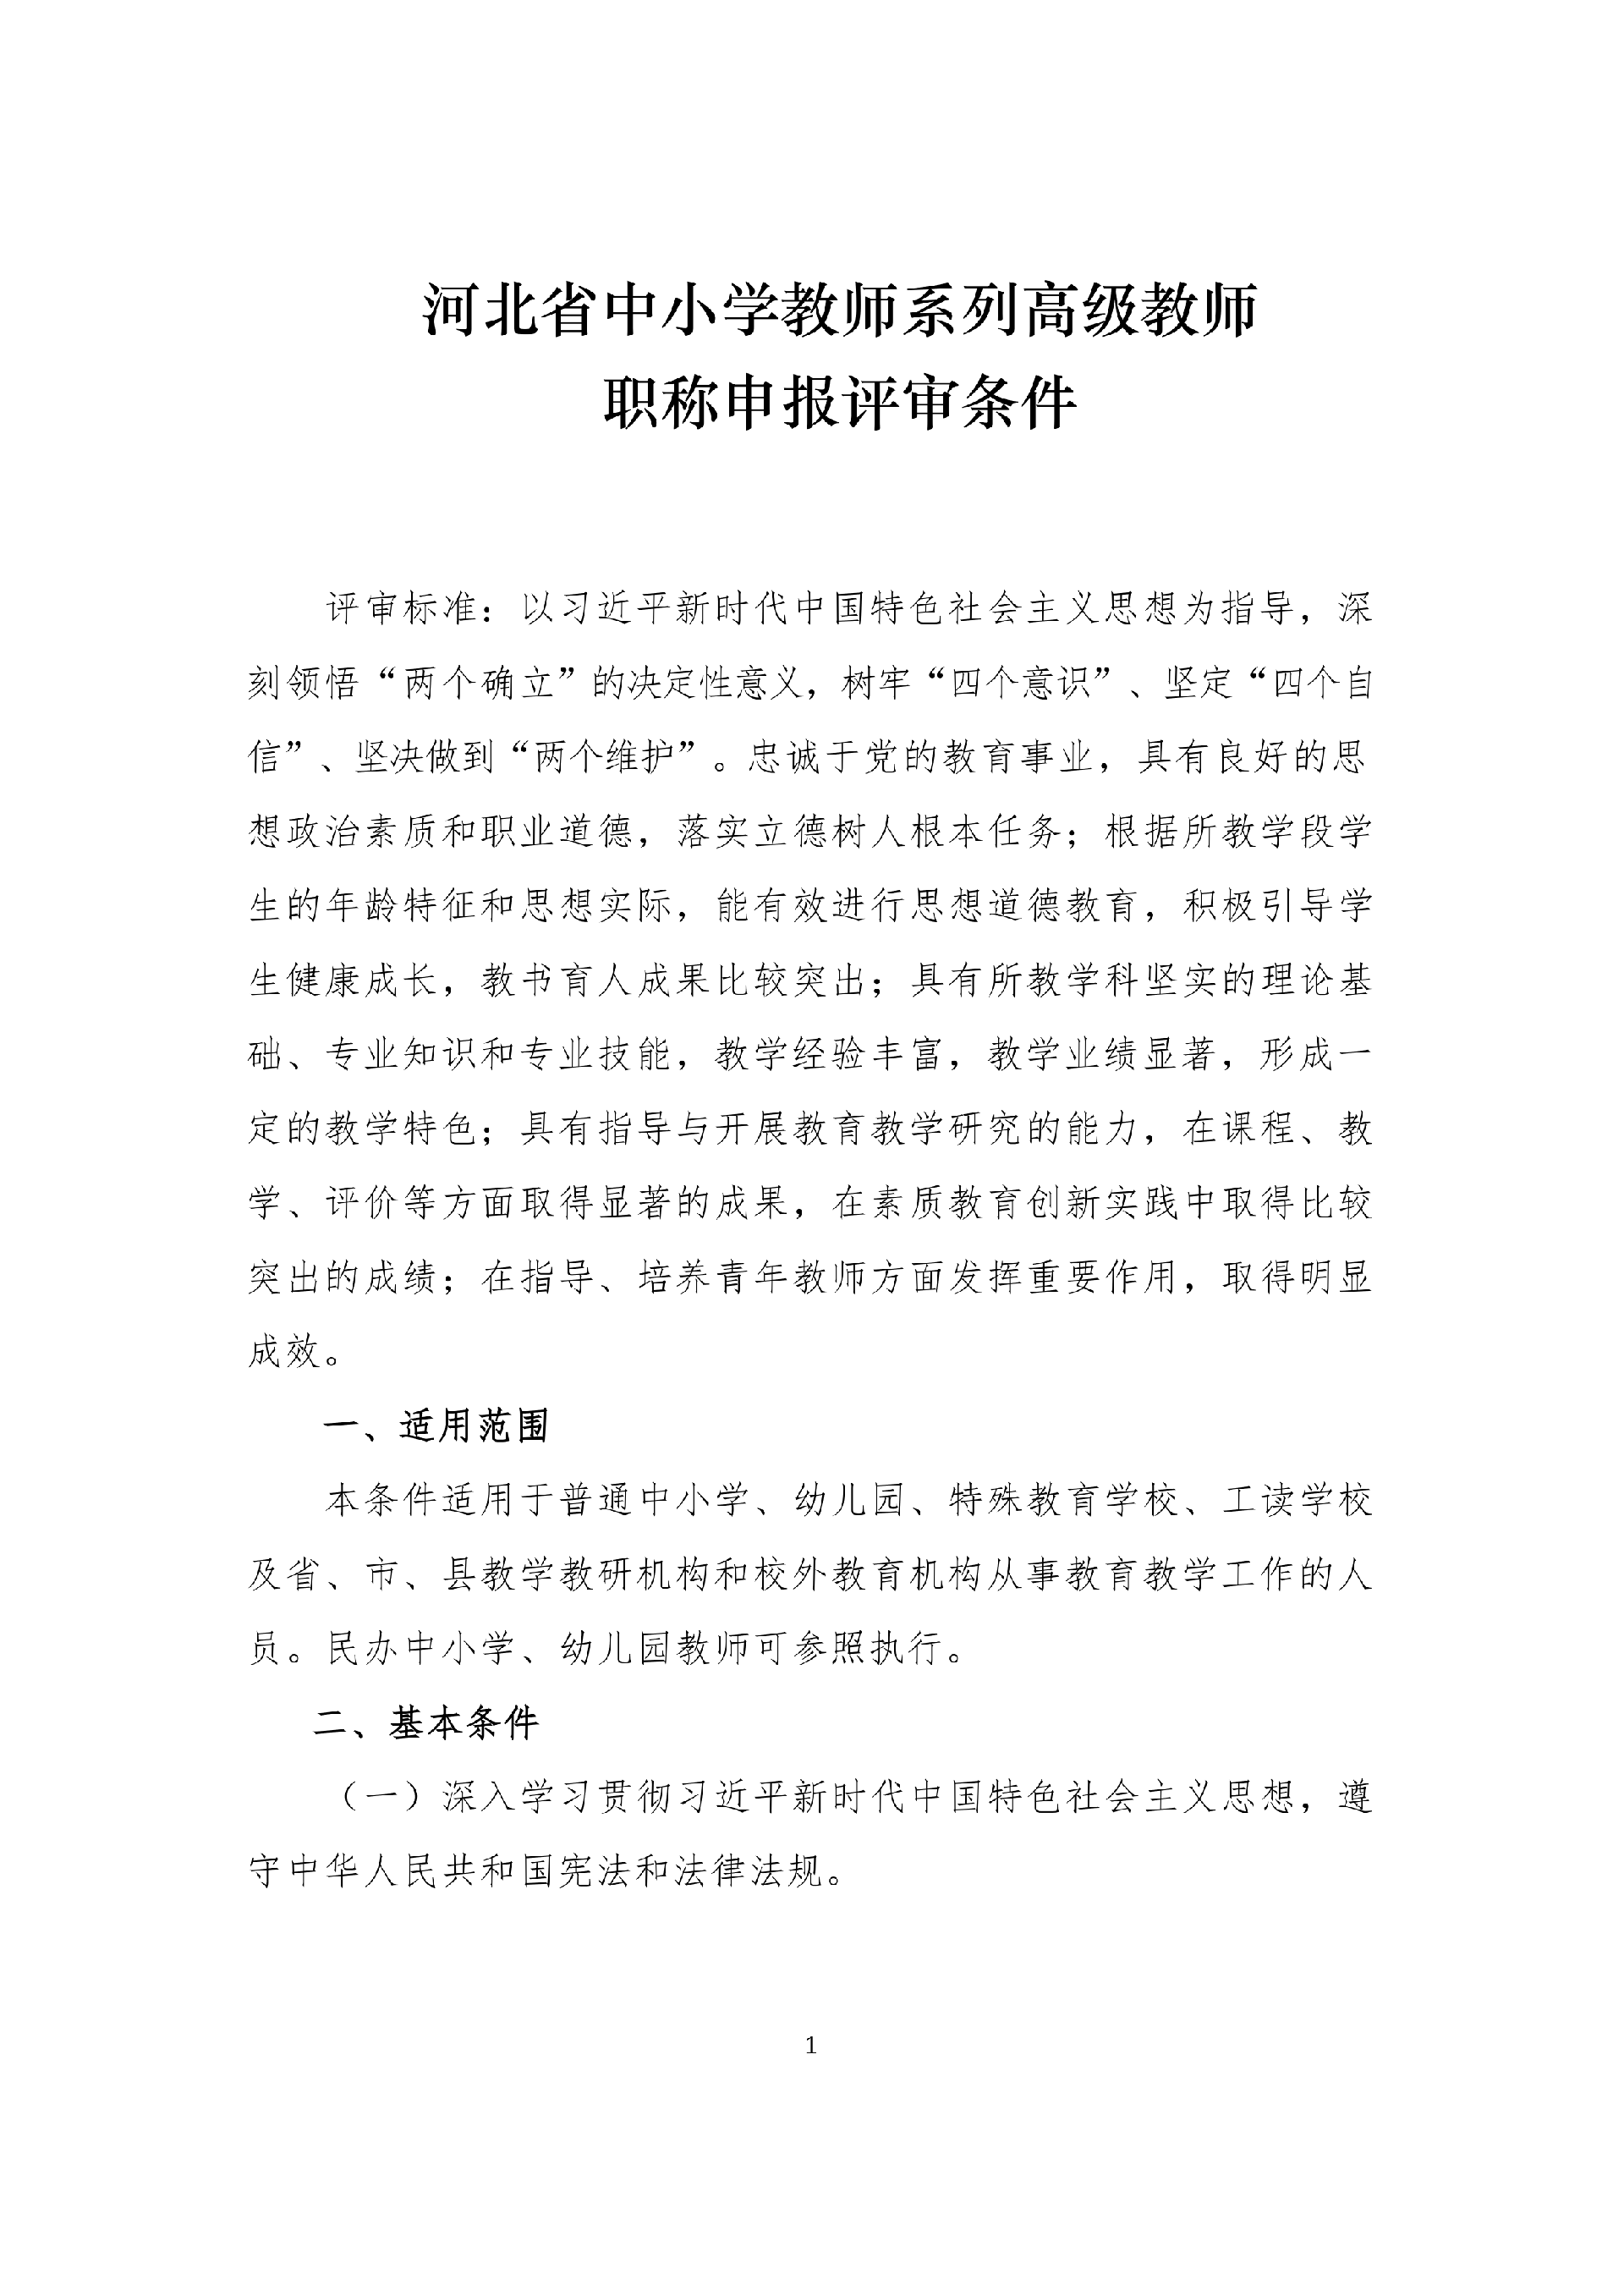 河北省中小学教师系列高级教师职称申报评审条件_1.png